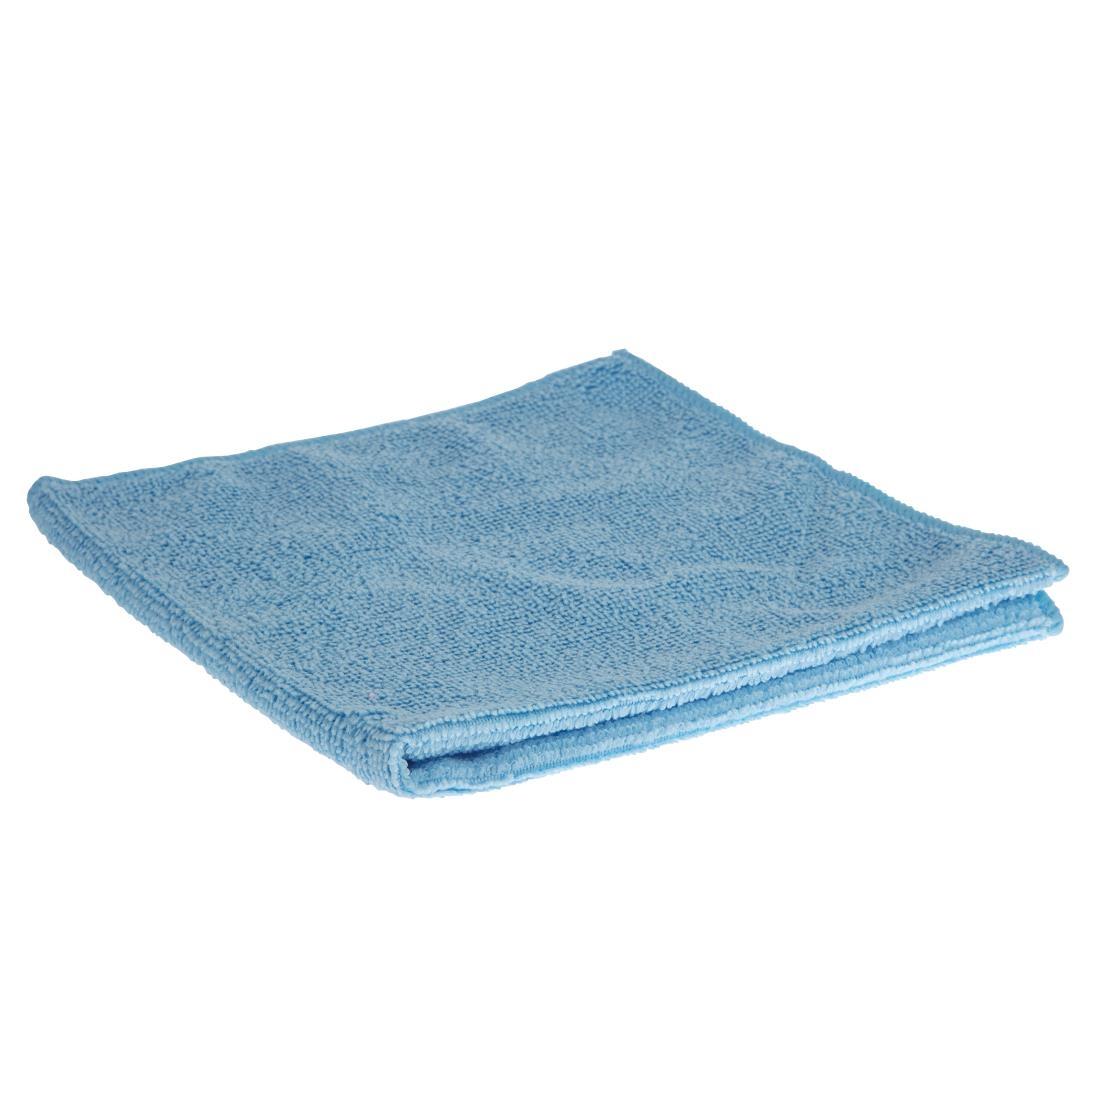 Jantex Microfibre Cloths Blue (Pack of 5) - DN839  - 1